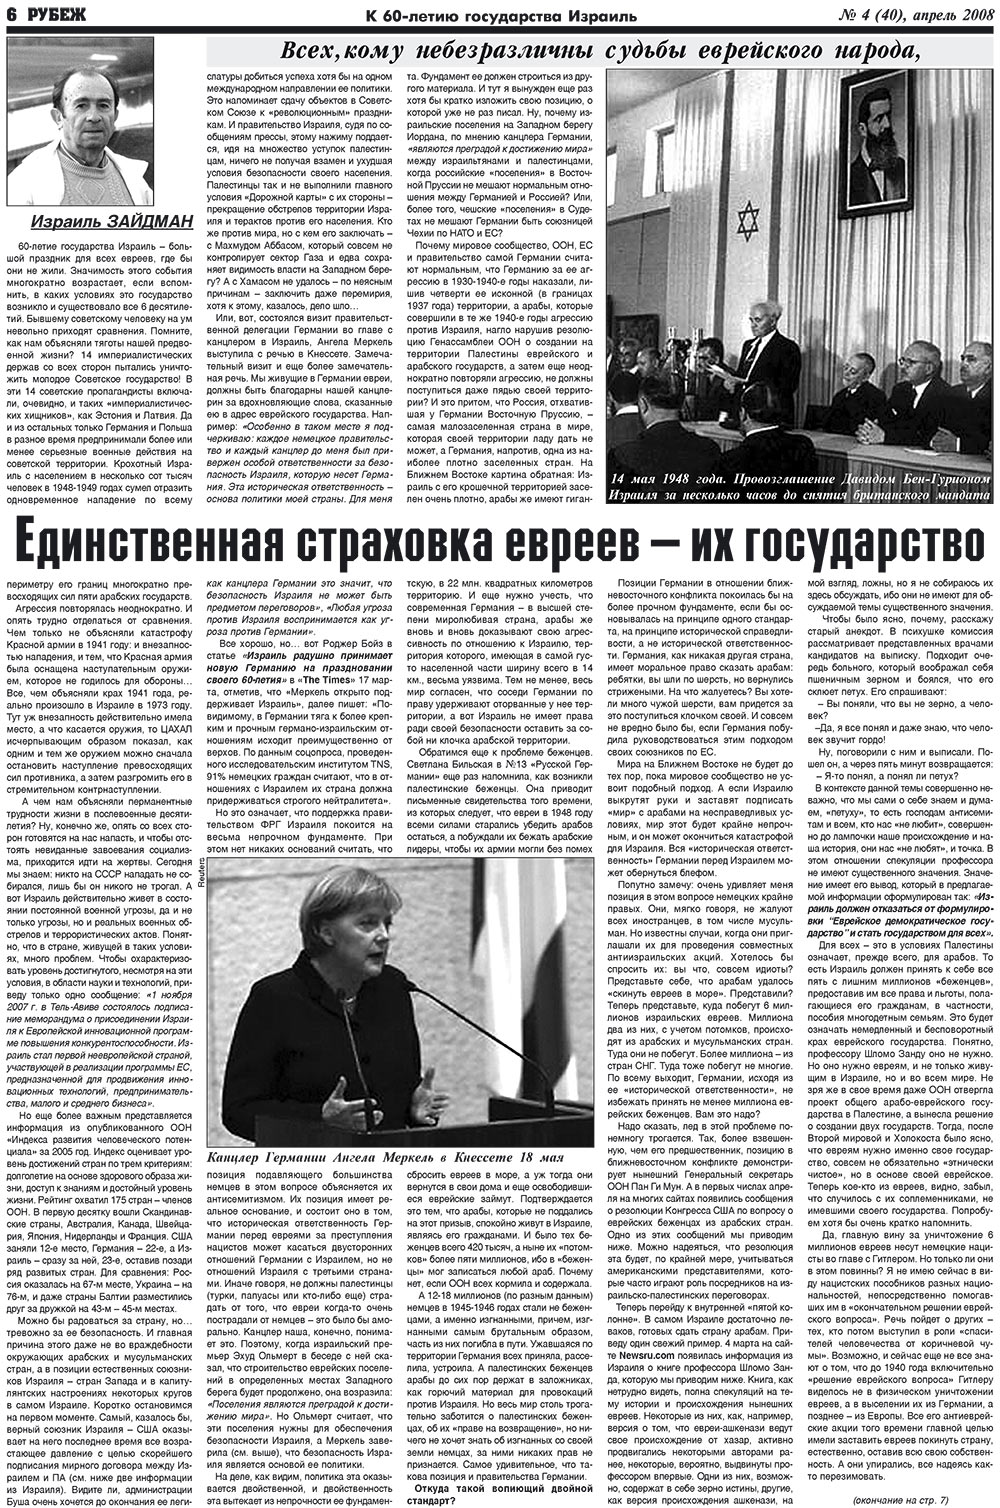 Рубеж (газета). 2008 год, номер 4, стр. 6